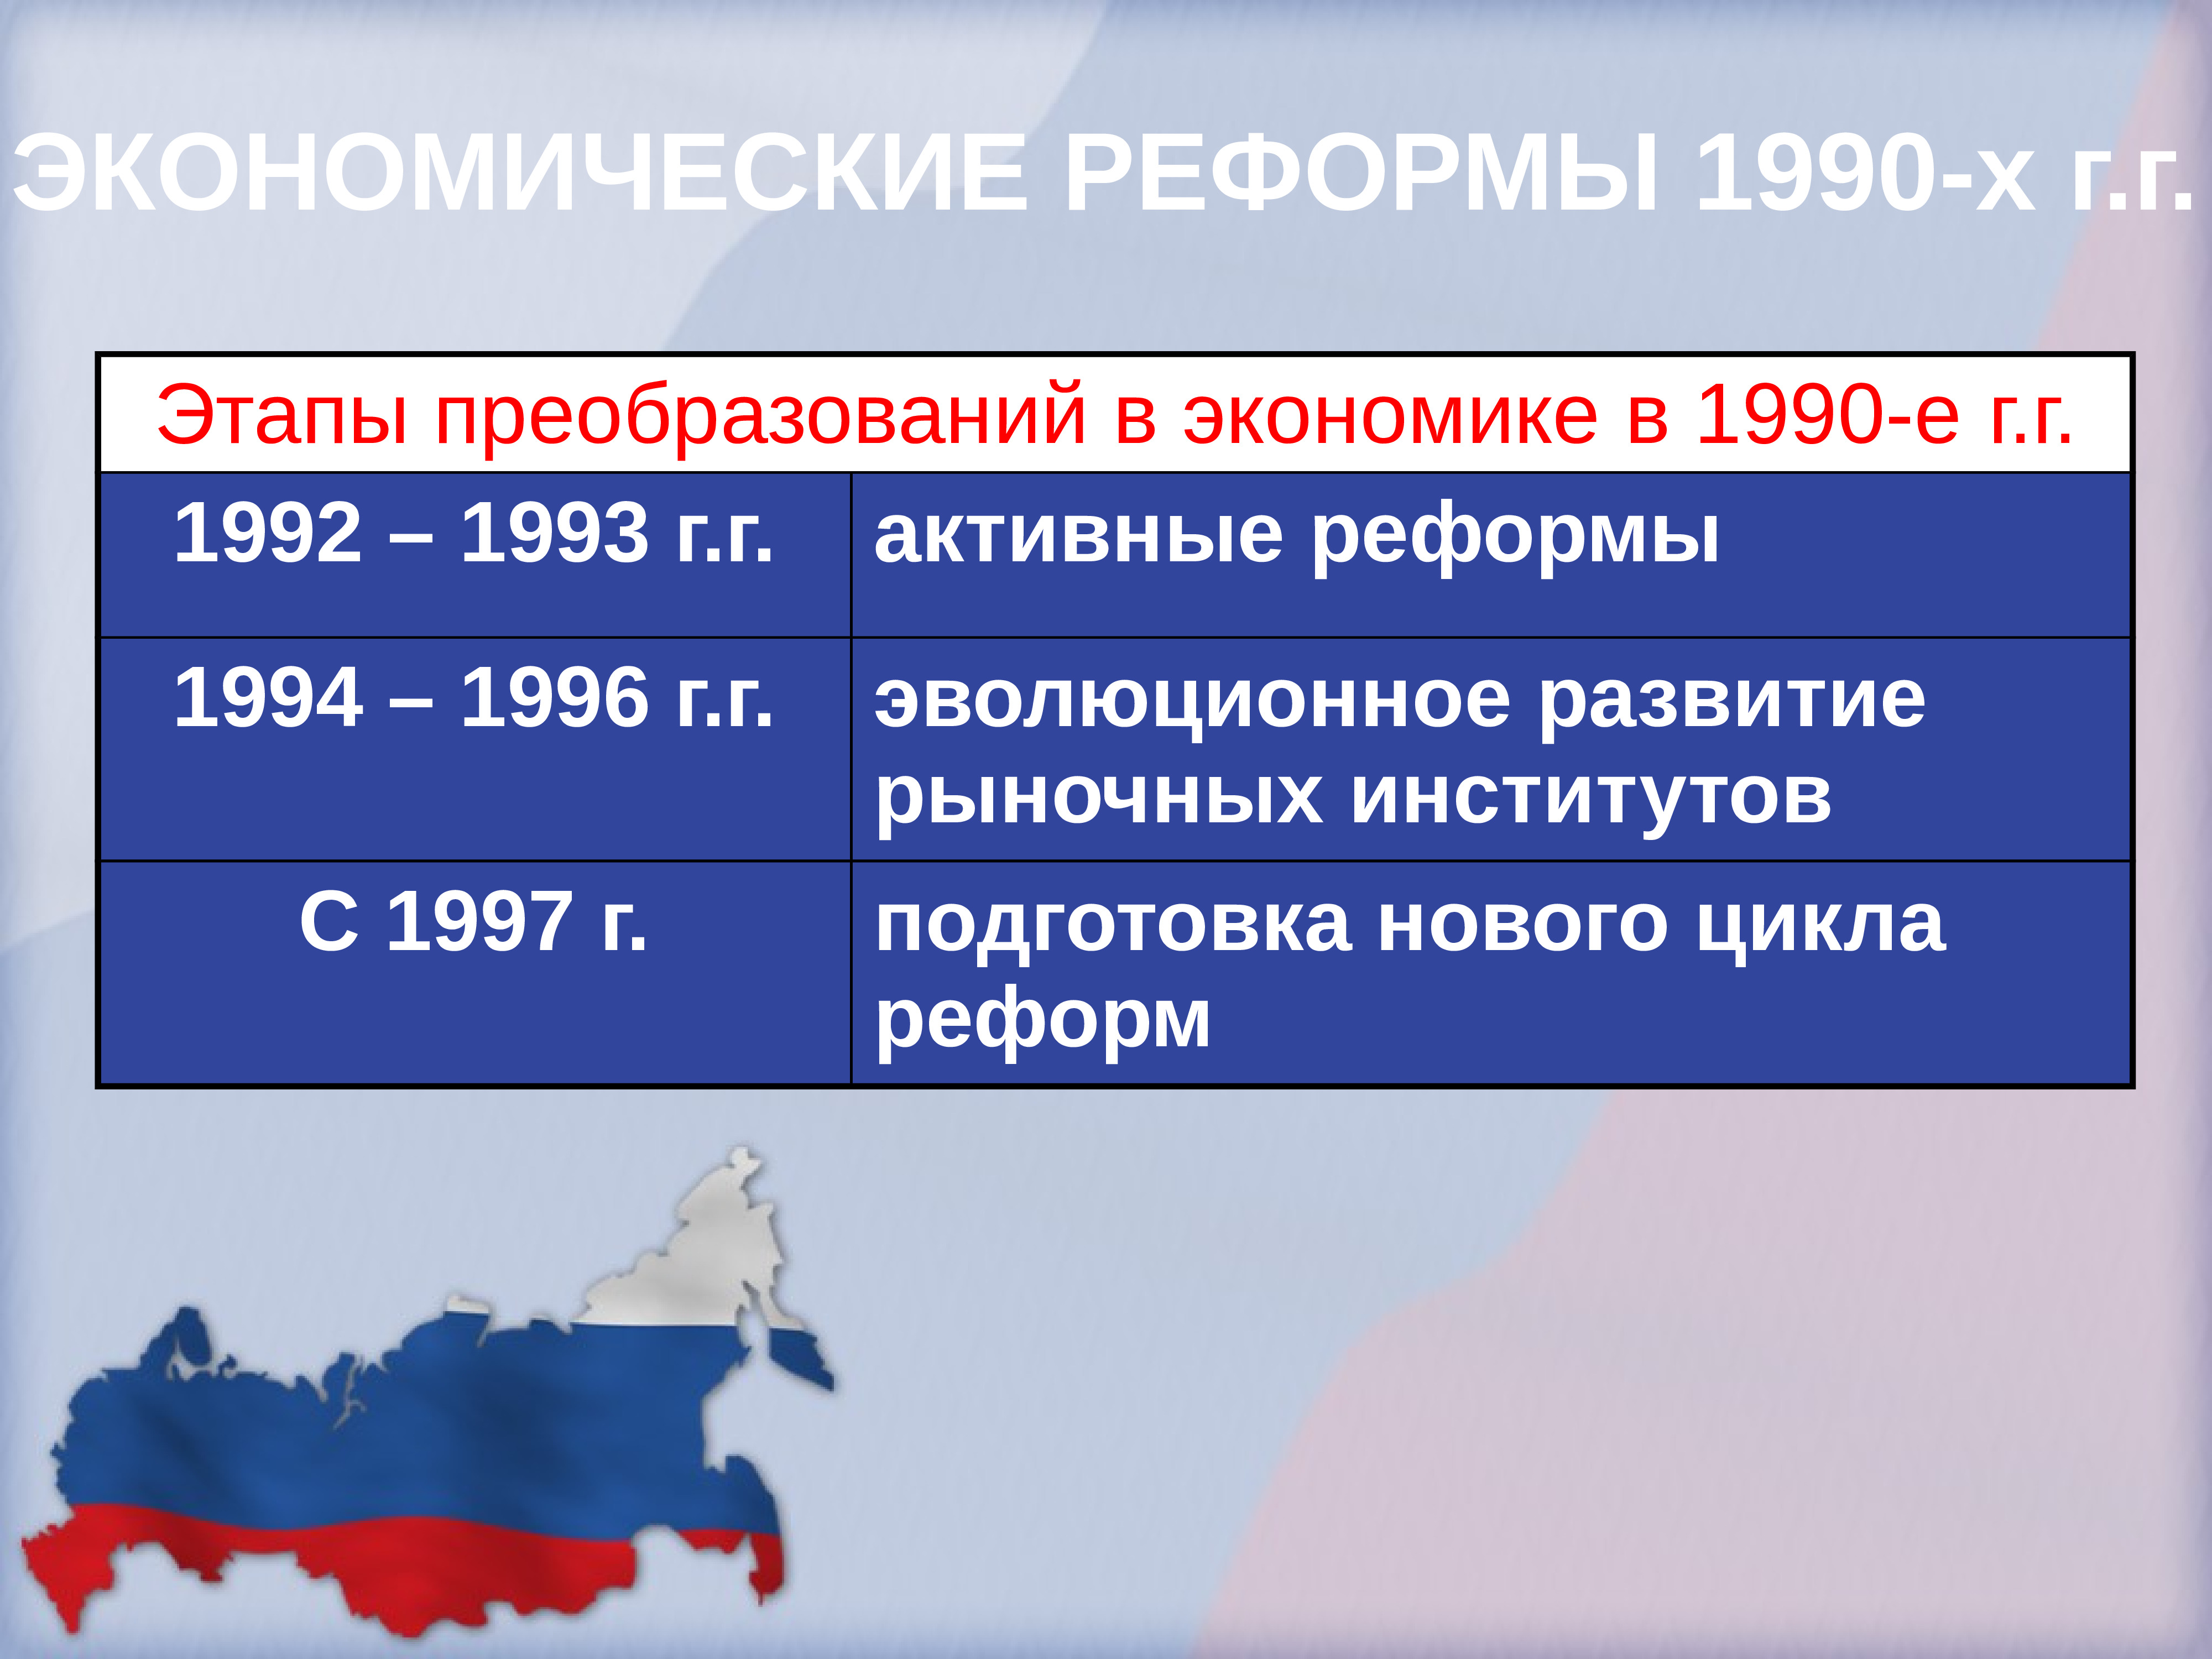 Направление экономической реформы 1990. Экономические реформы 1990. Экономические реформы начала 1990-х. Экономические реформы 1990 годов в России. Экономическая реформа в России в 1990-х.